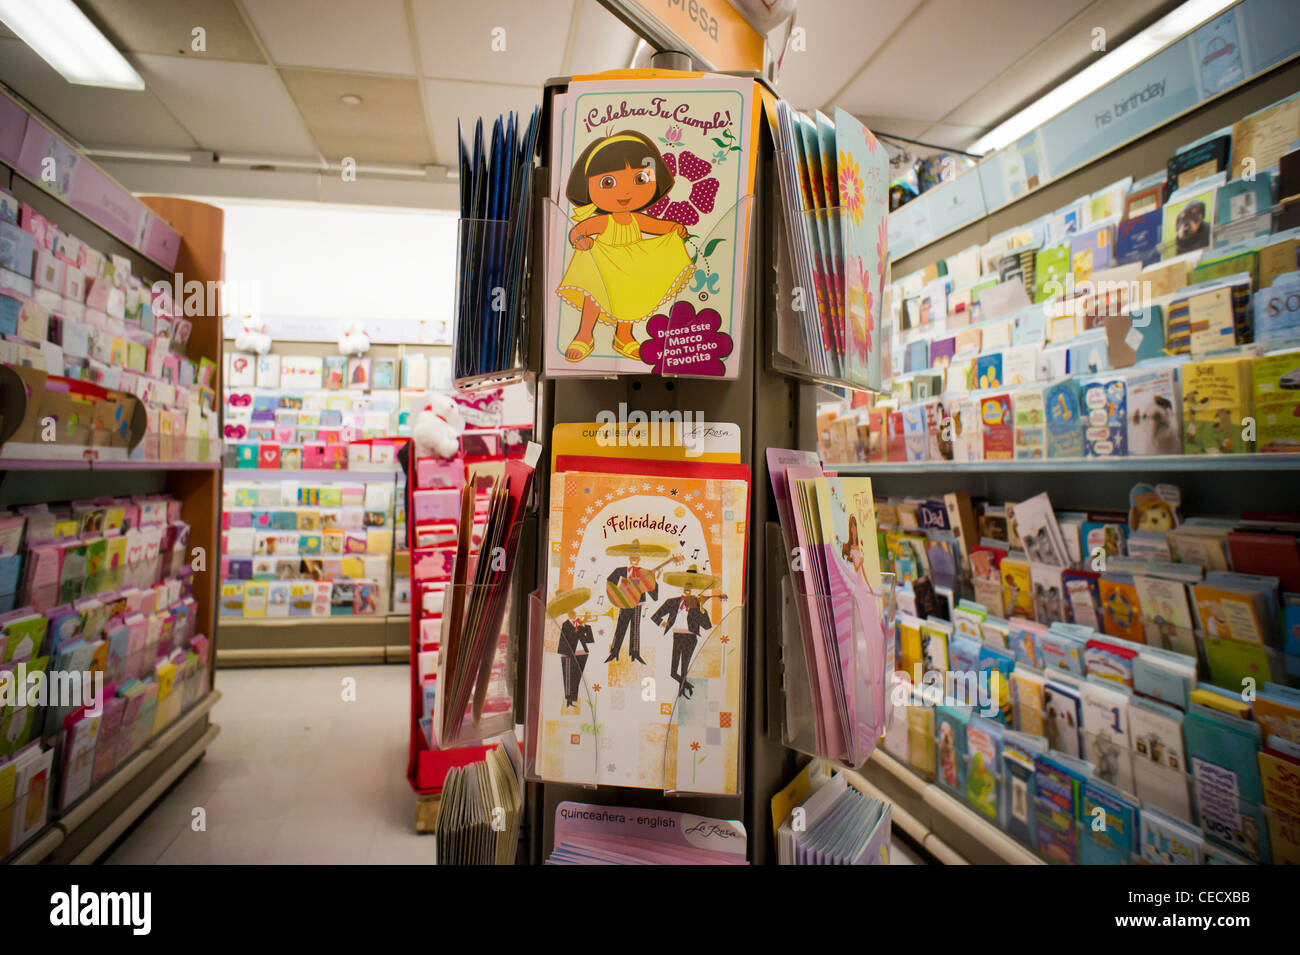 Spanische Sprache Grußkarten sind zu sehen einer eine Anzeige in einem Store in New York Stockfoto